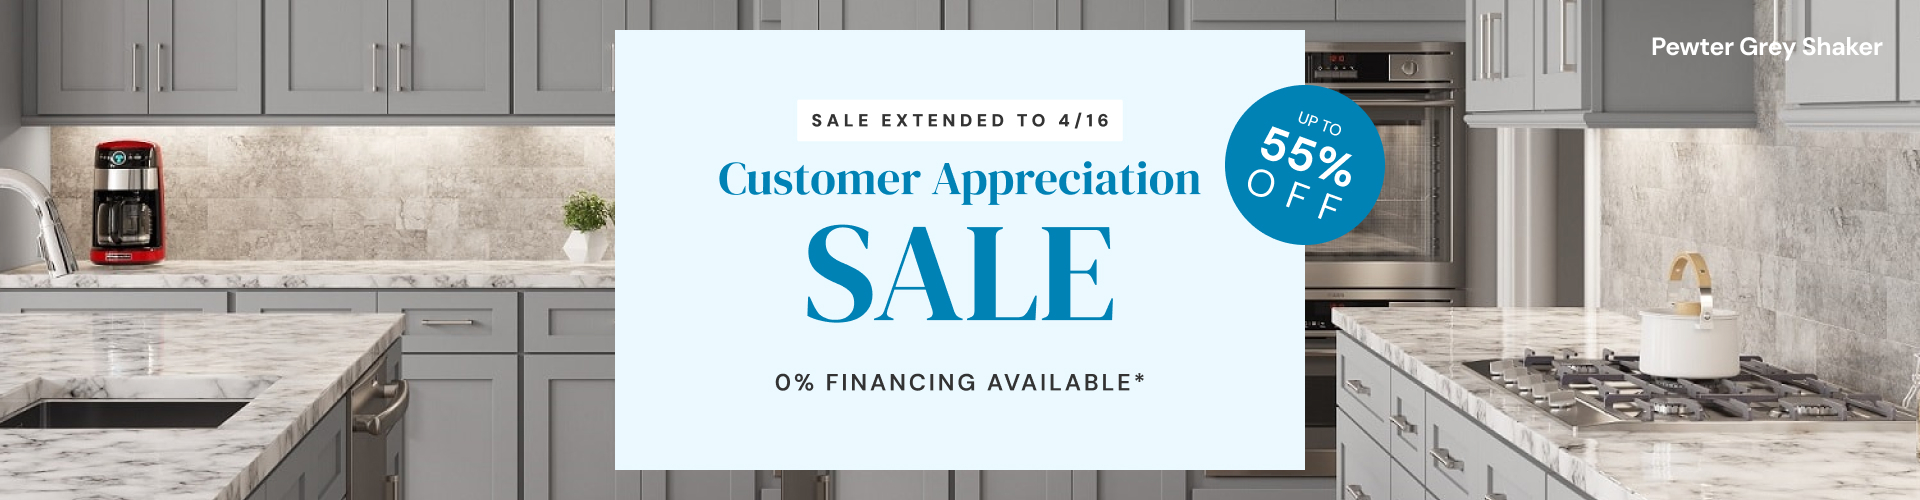 Customer Appreciation Sale Extension